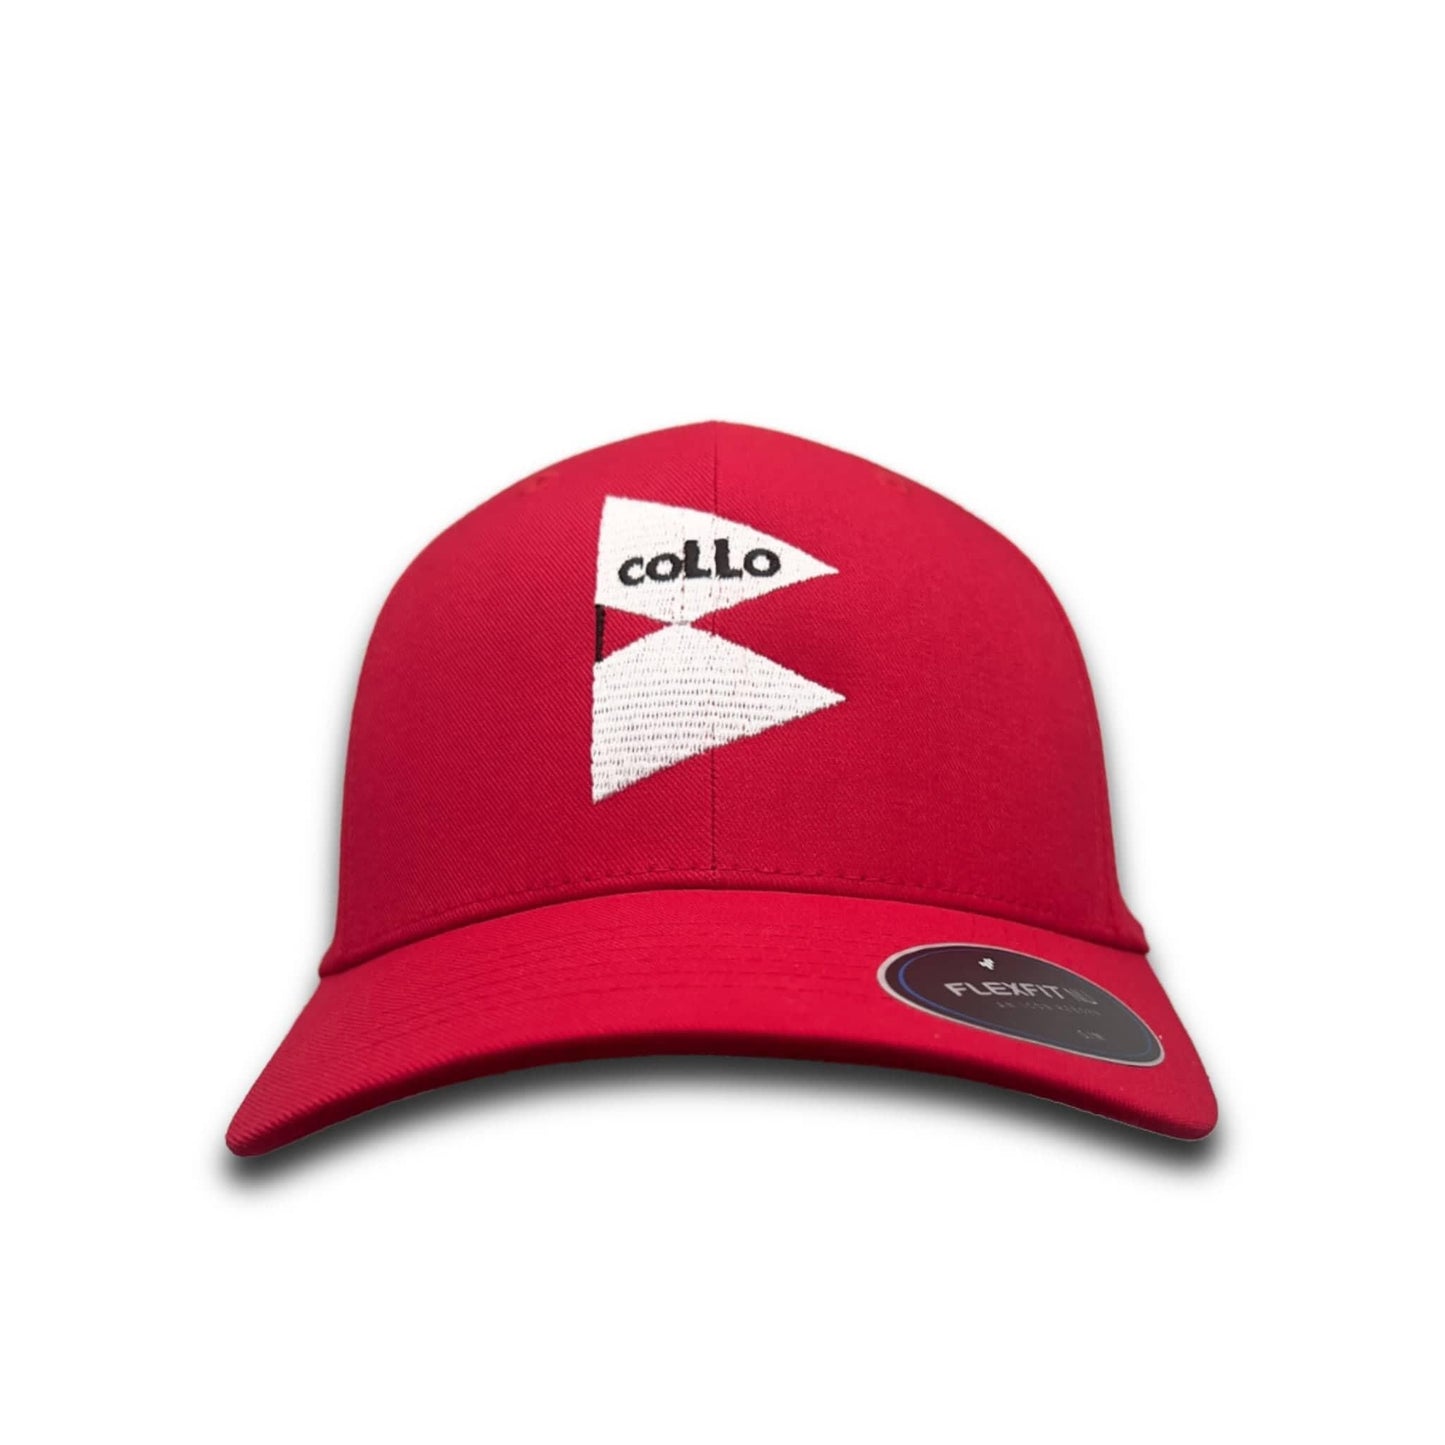 
                  
                    coLLo AppareL Hats S/M / Red BRANIGAN
                  
                